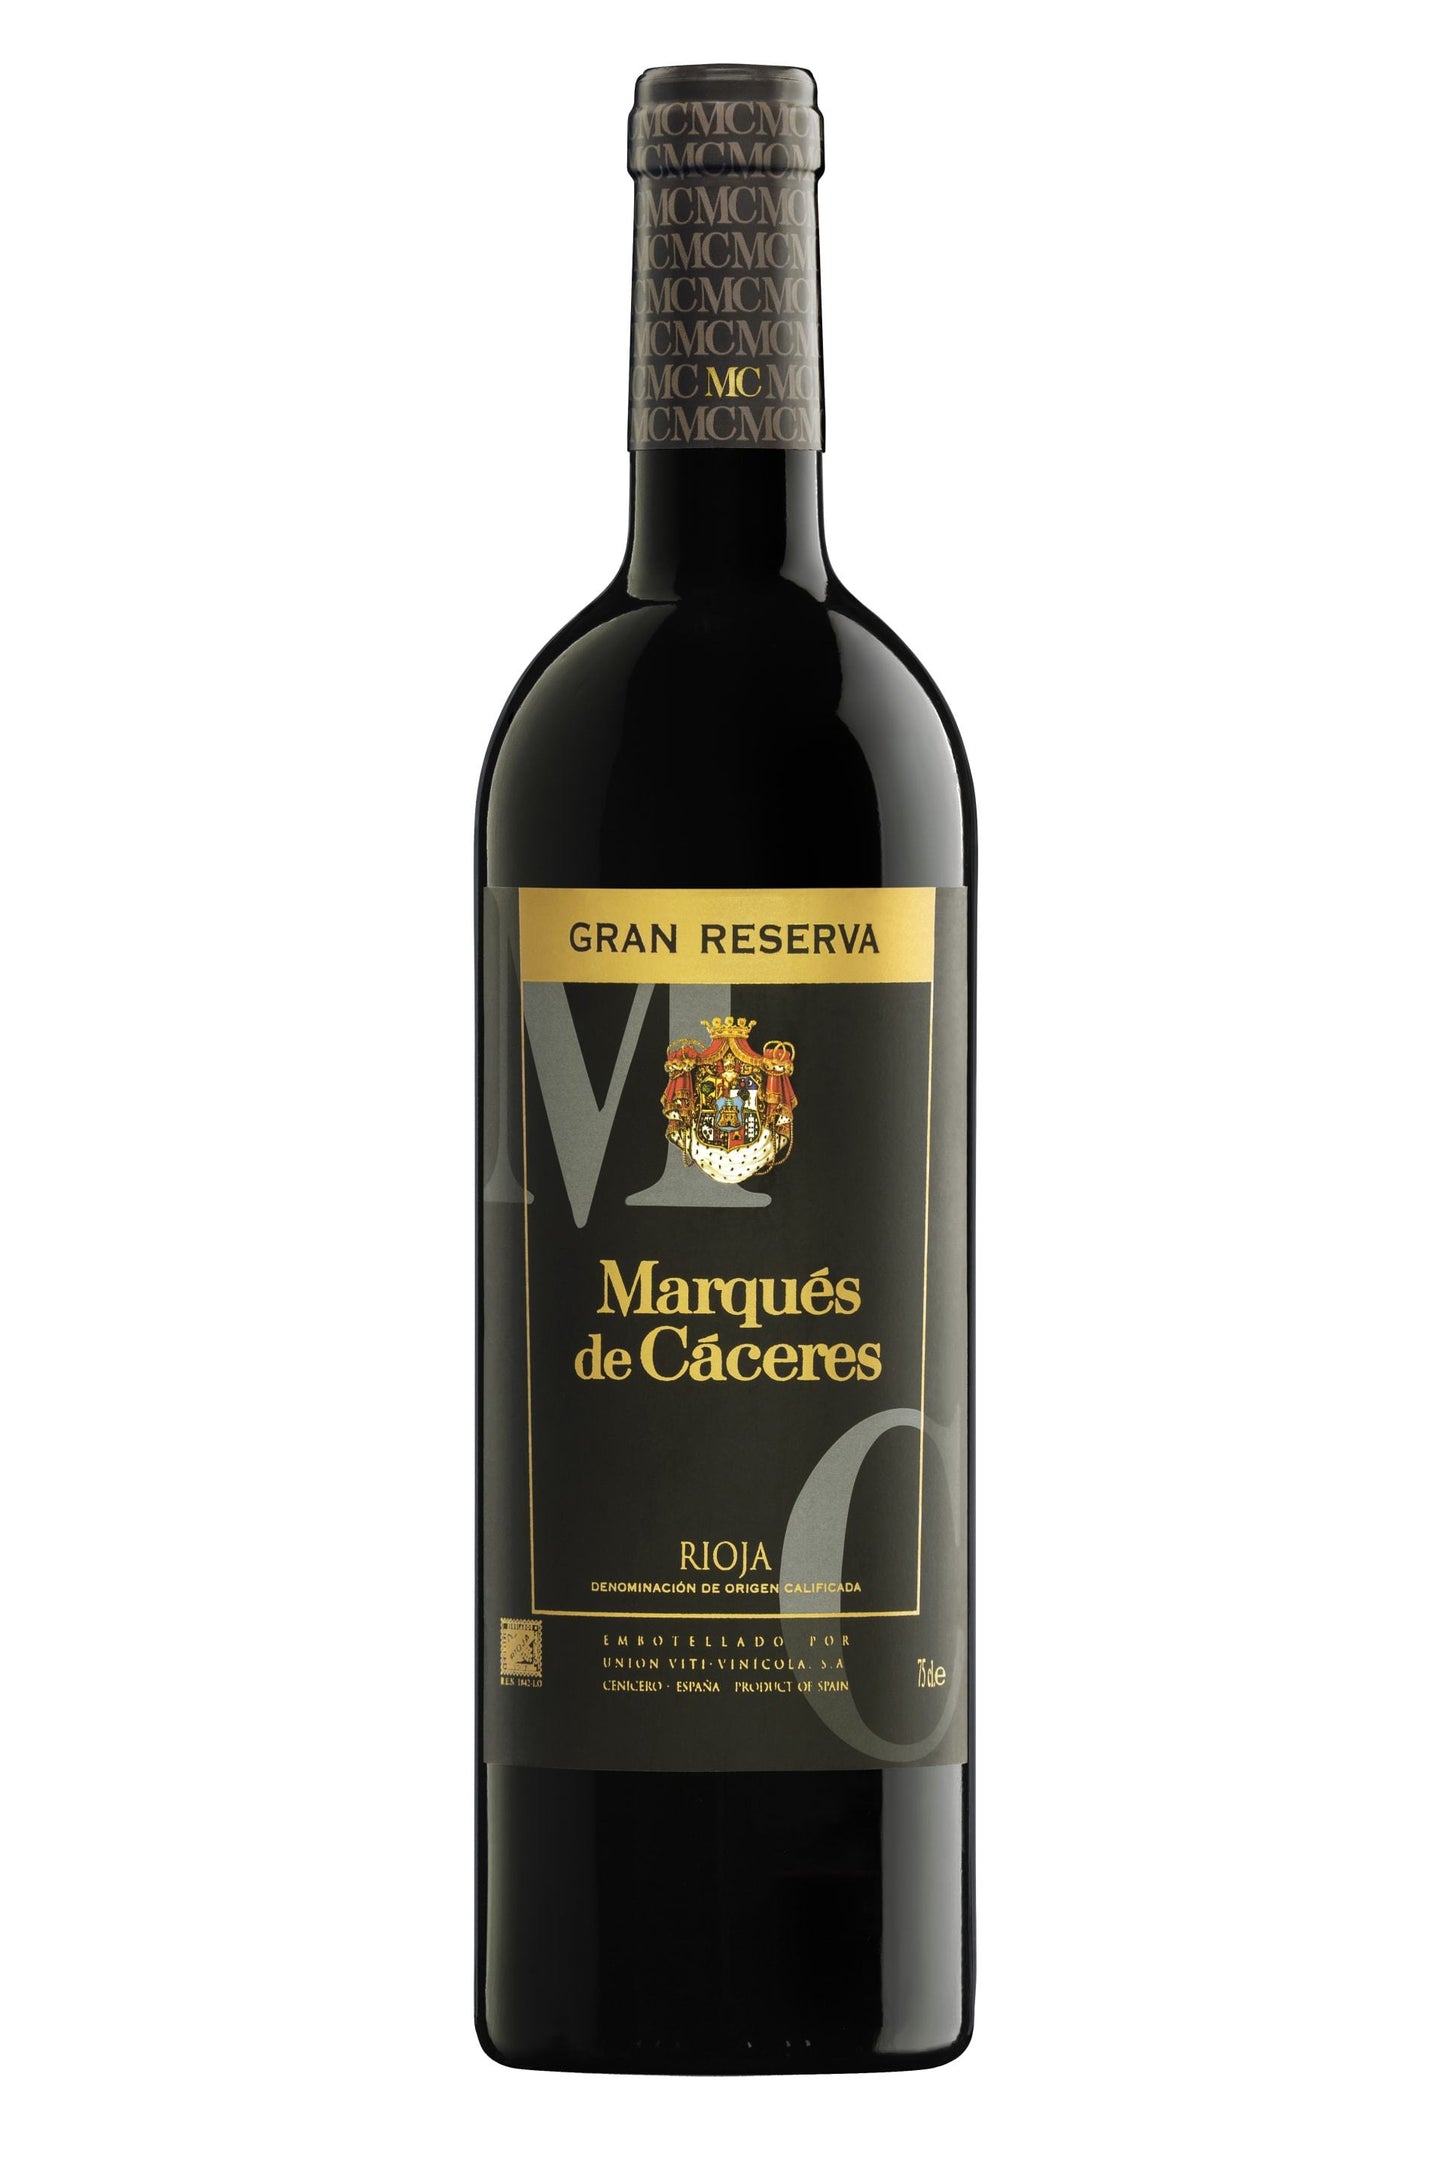 Marques de Caceres Rioja Gran Reserva 2011